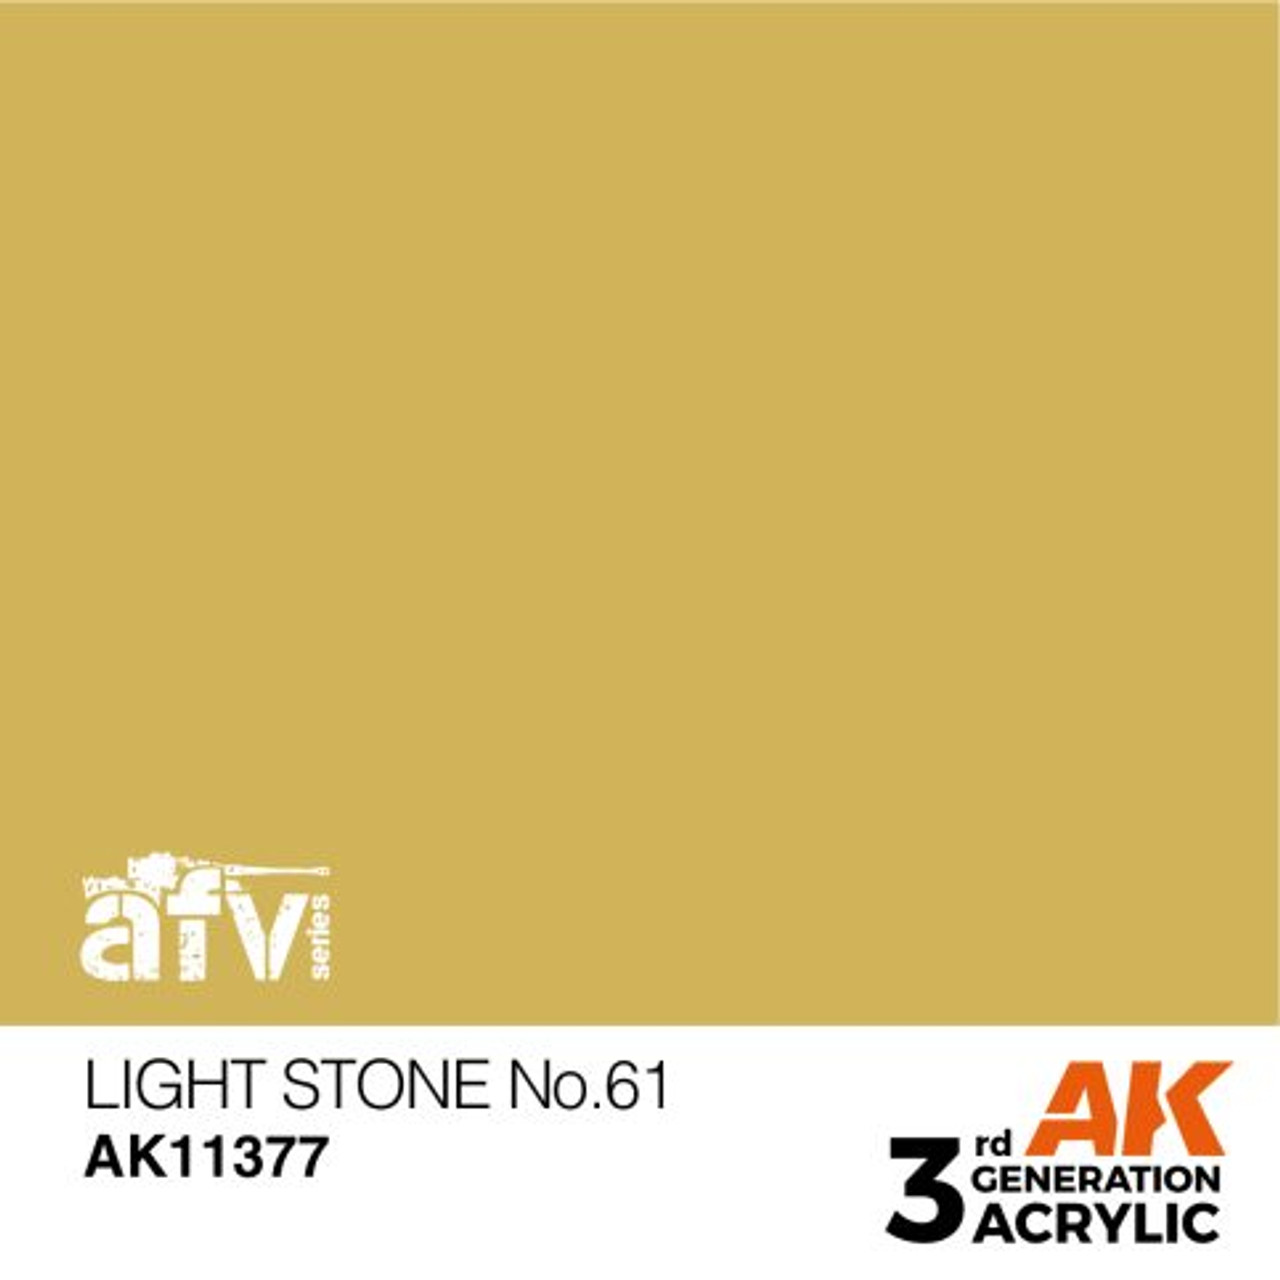 3G AFV 377 - Light Stone No.61